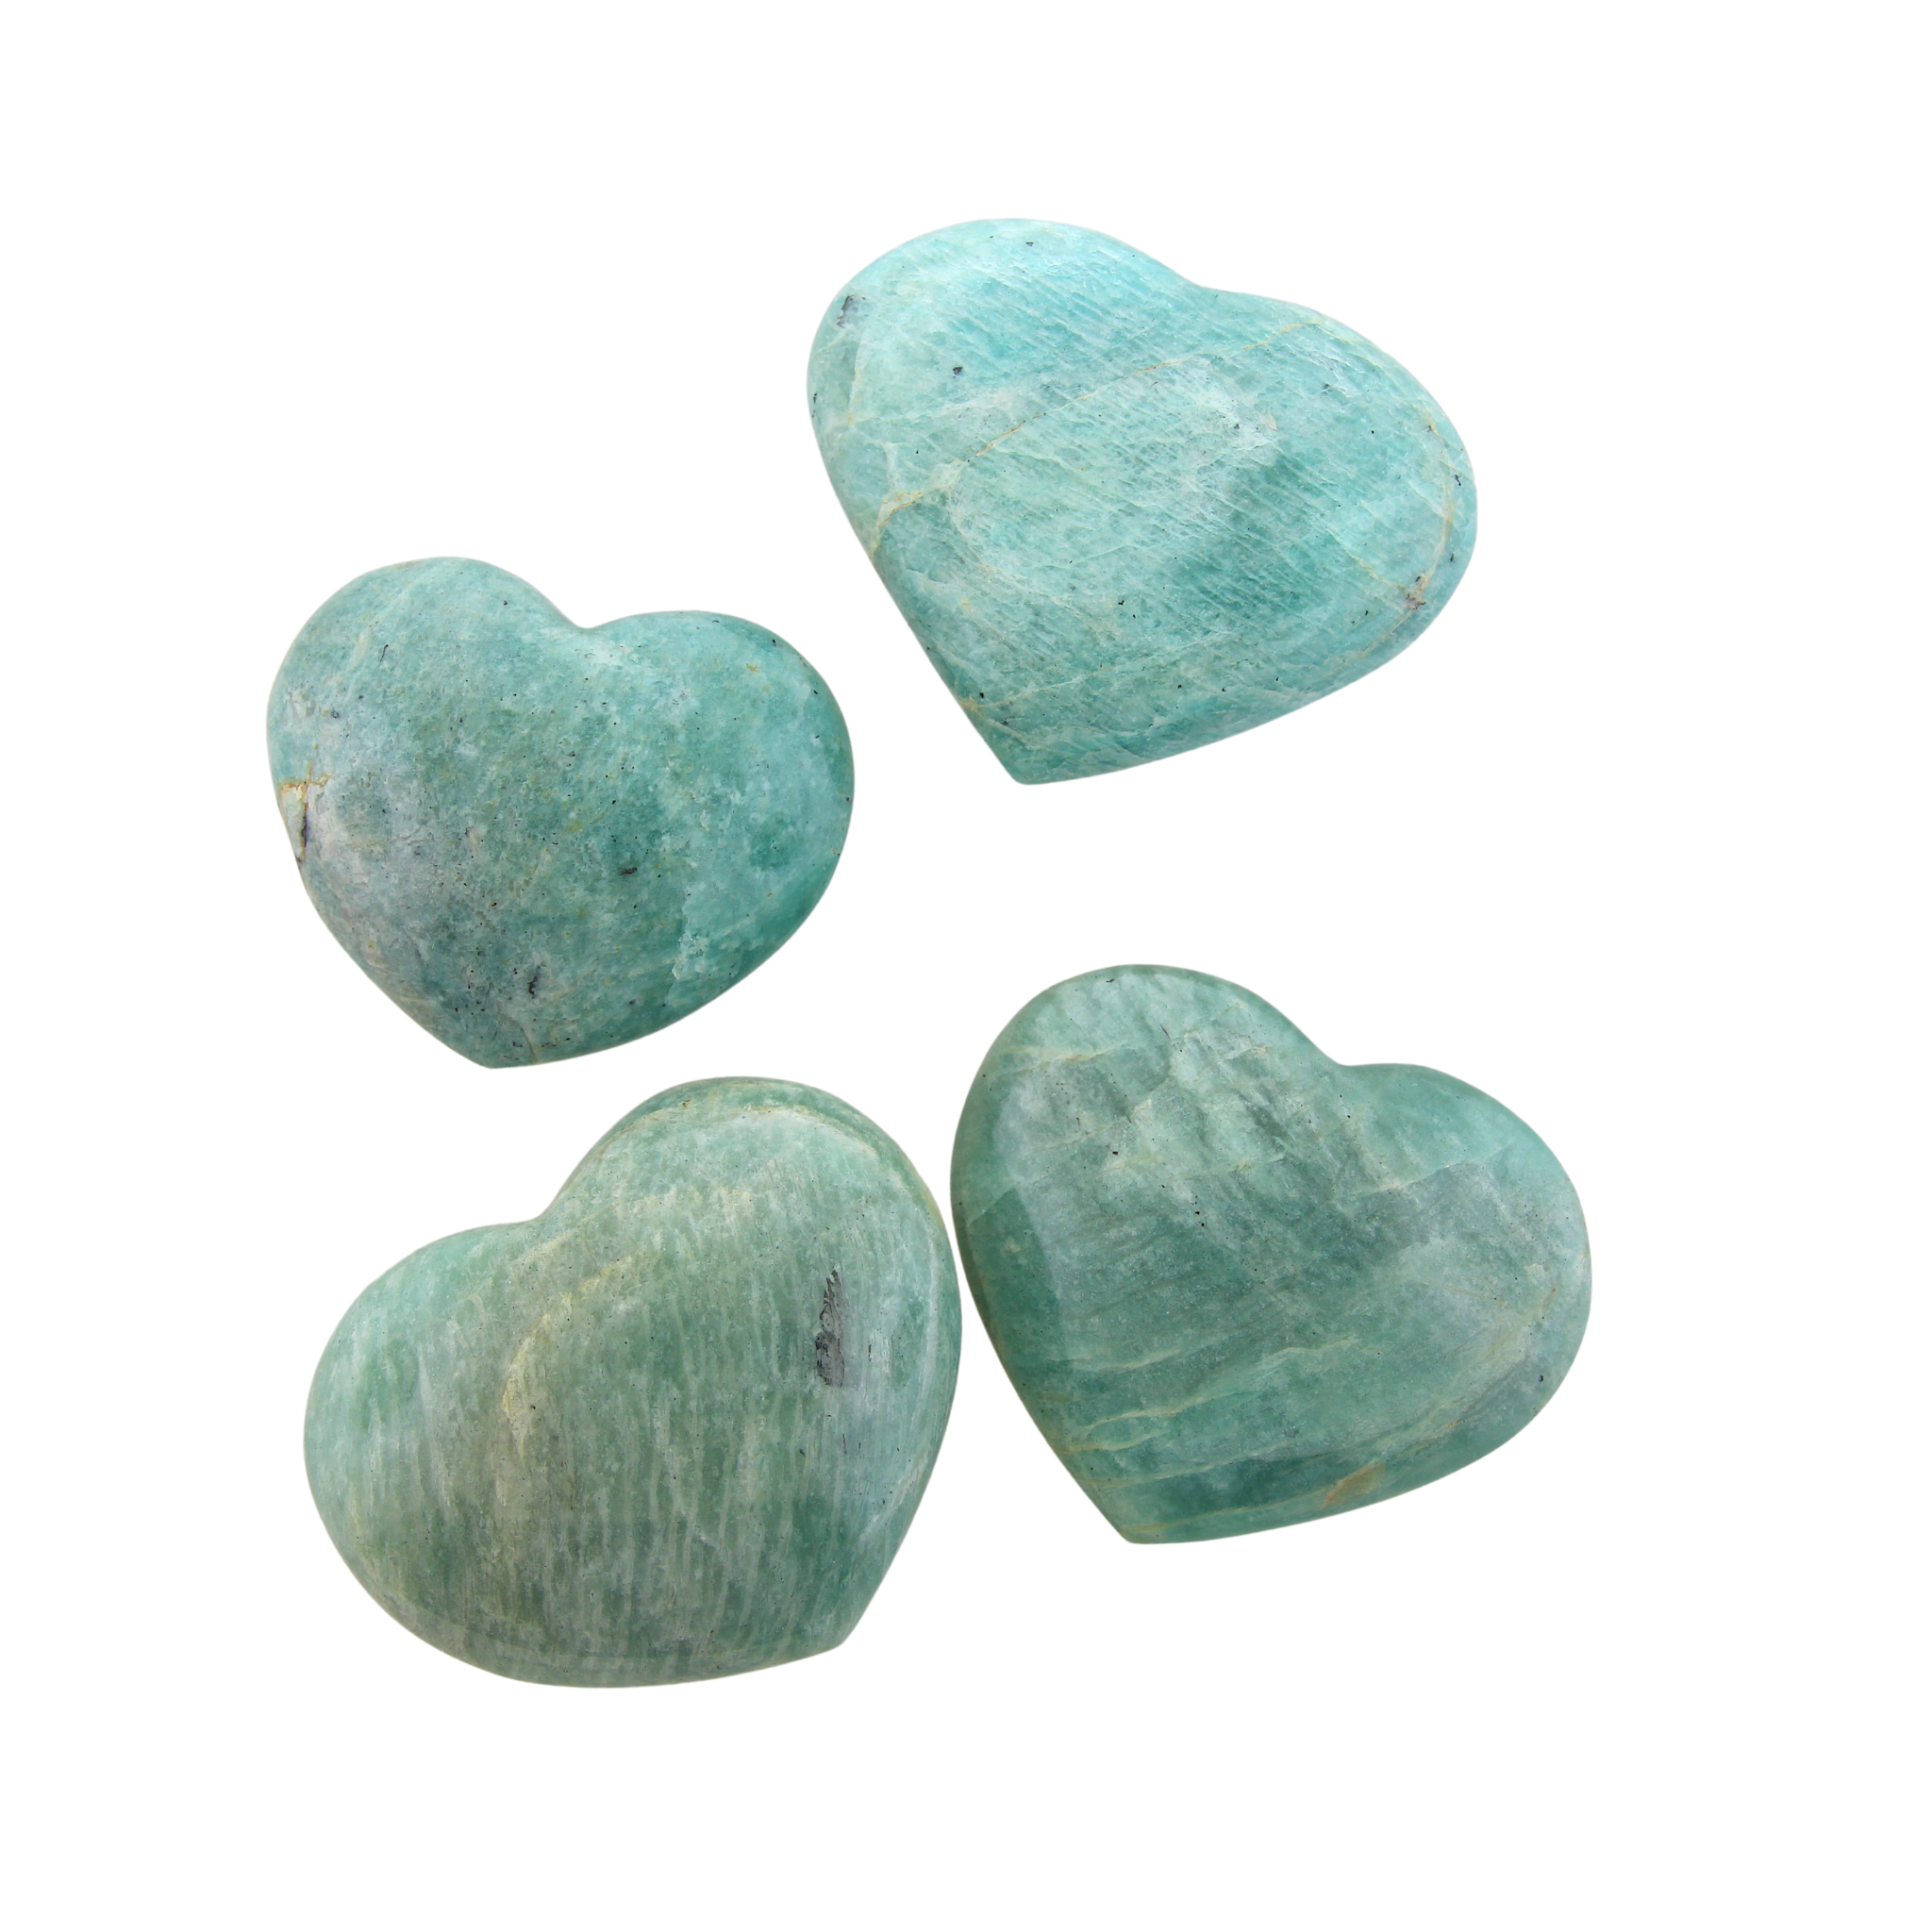 Large Heart Palm Stones - Amazonite